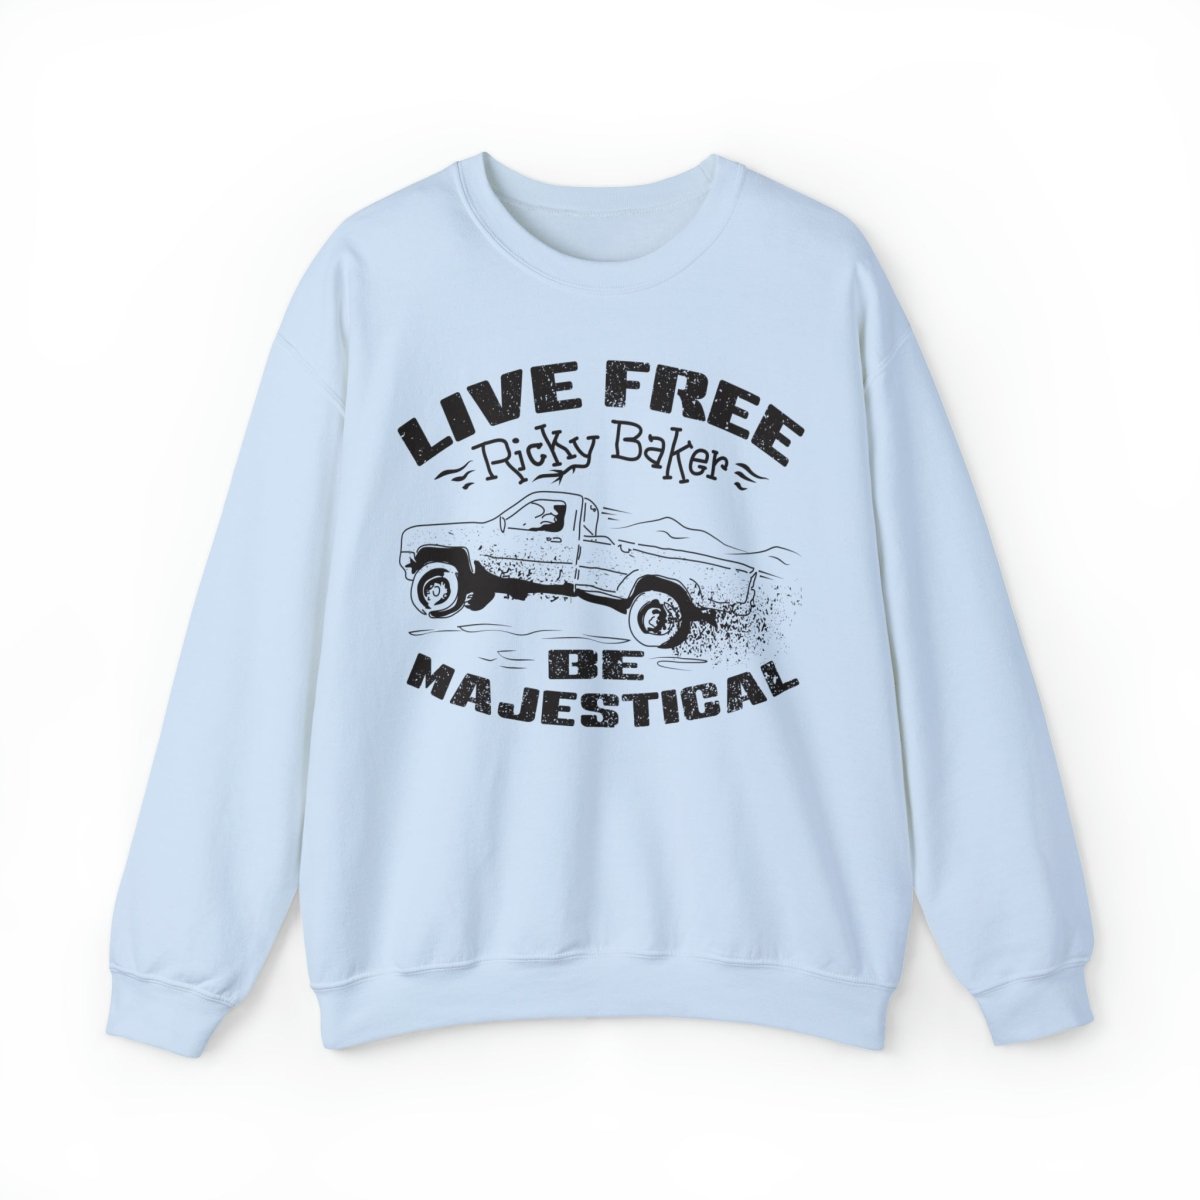 Live Free Ricky Baker Fleece Sweatshirt, Majestical, New Zealand, Outlaw, Master Bushman, Teen